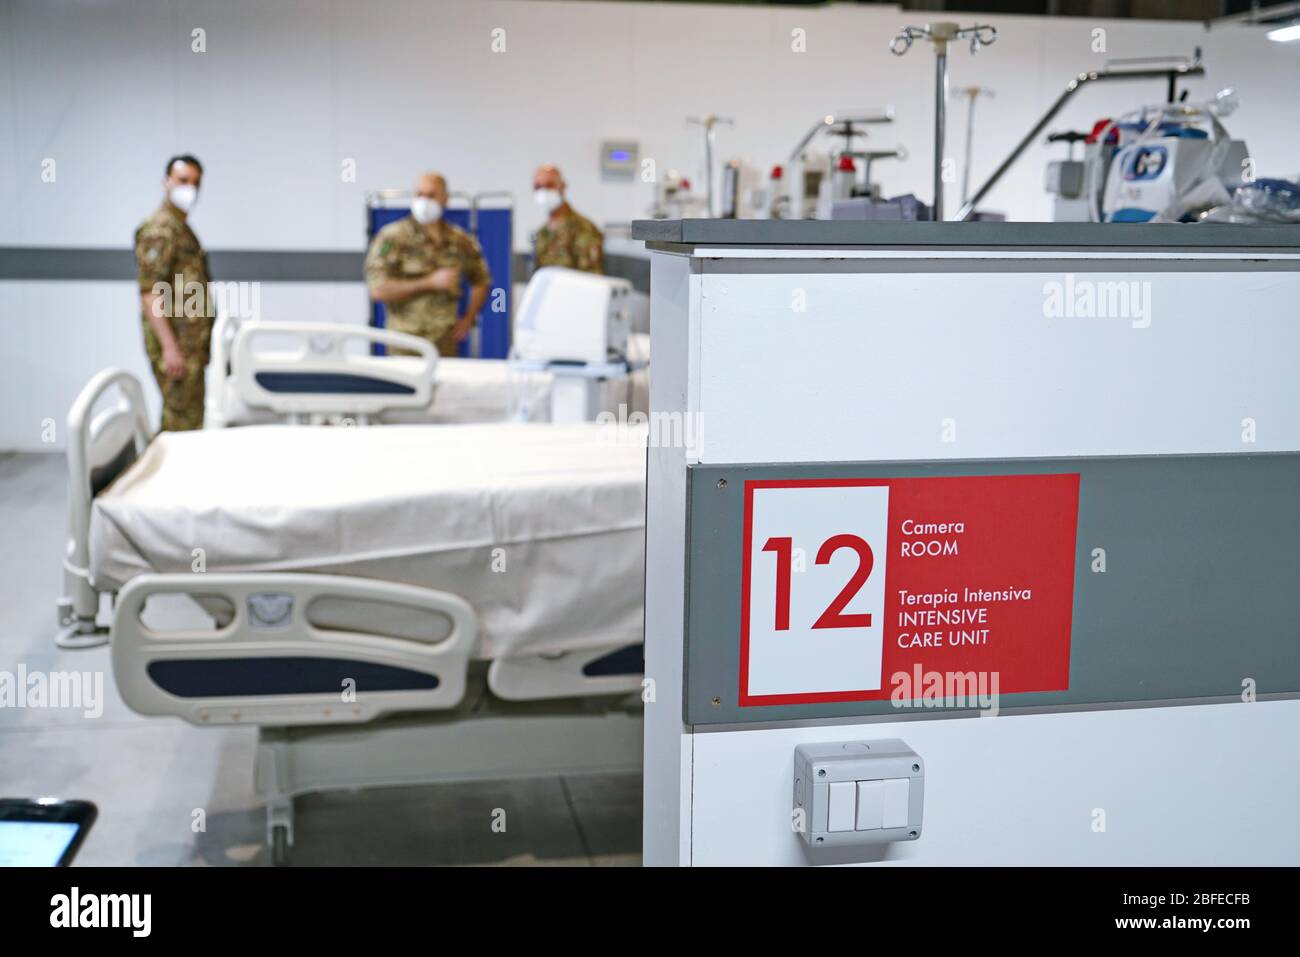 Covid Field Hospital, allestito in un ex impianto industriale, con 90 letti attrezzati per la terapia intensiva del coronavirus. Torino, Italia - Aprile 2020 Foto Stock